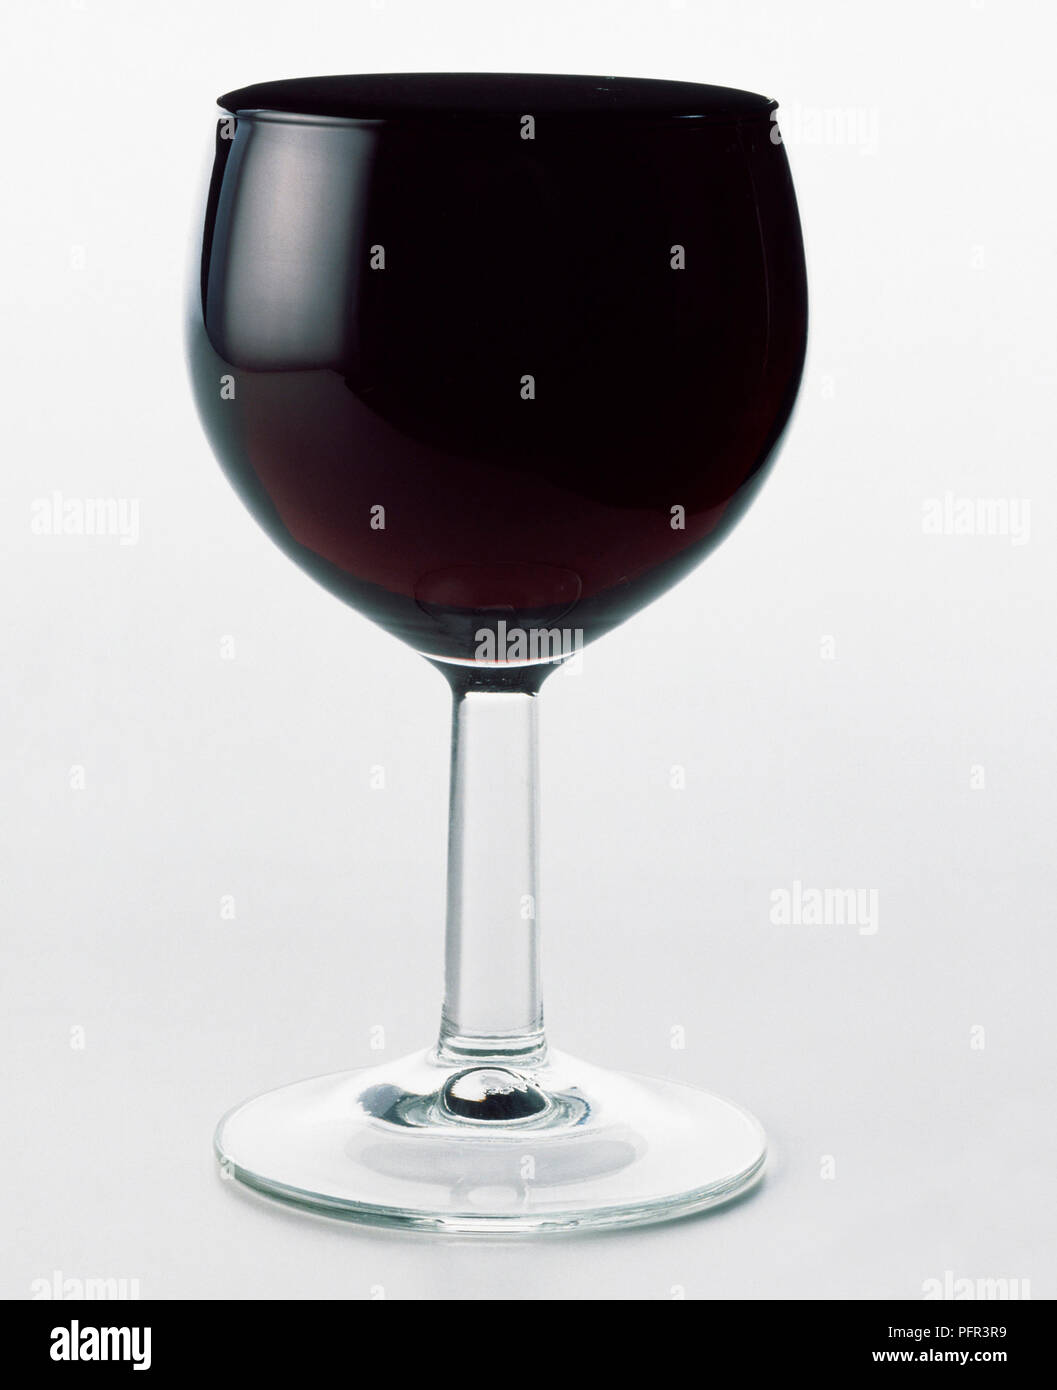 Verre de vin rempli à ras bord, tension de surface l'empêche de déborder  Photo Stock - Alamy